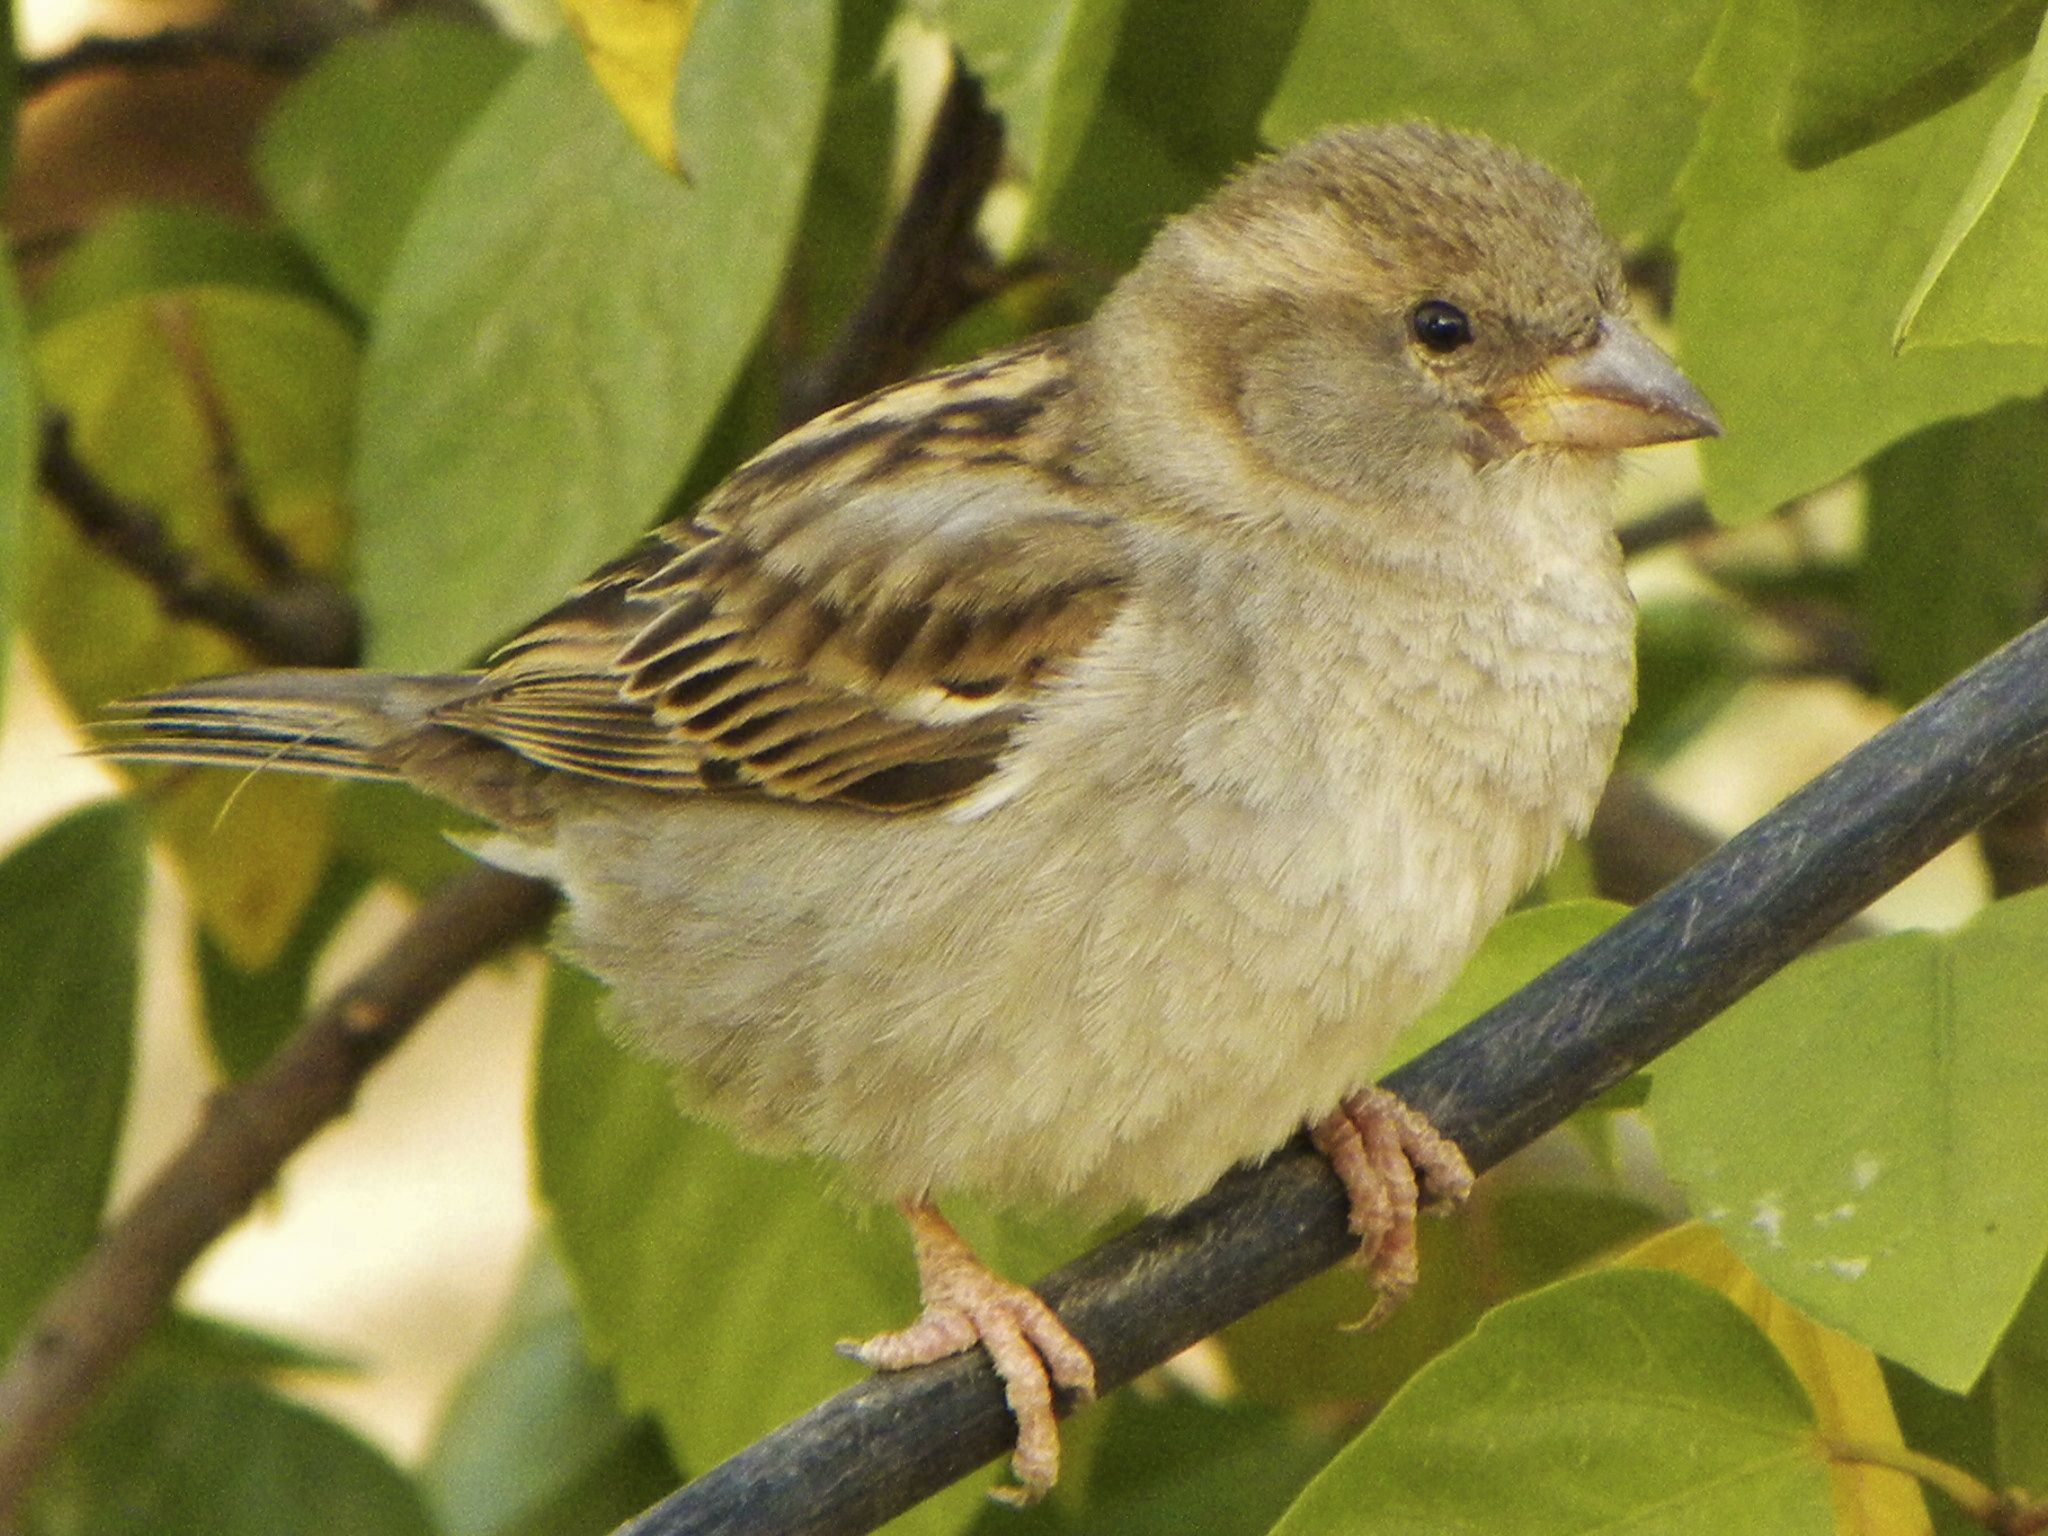 Sparrow cute, met in Agadir, Morocco...